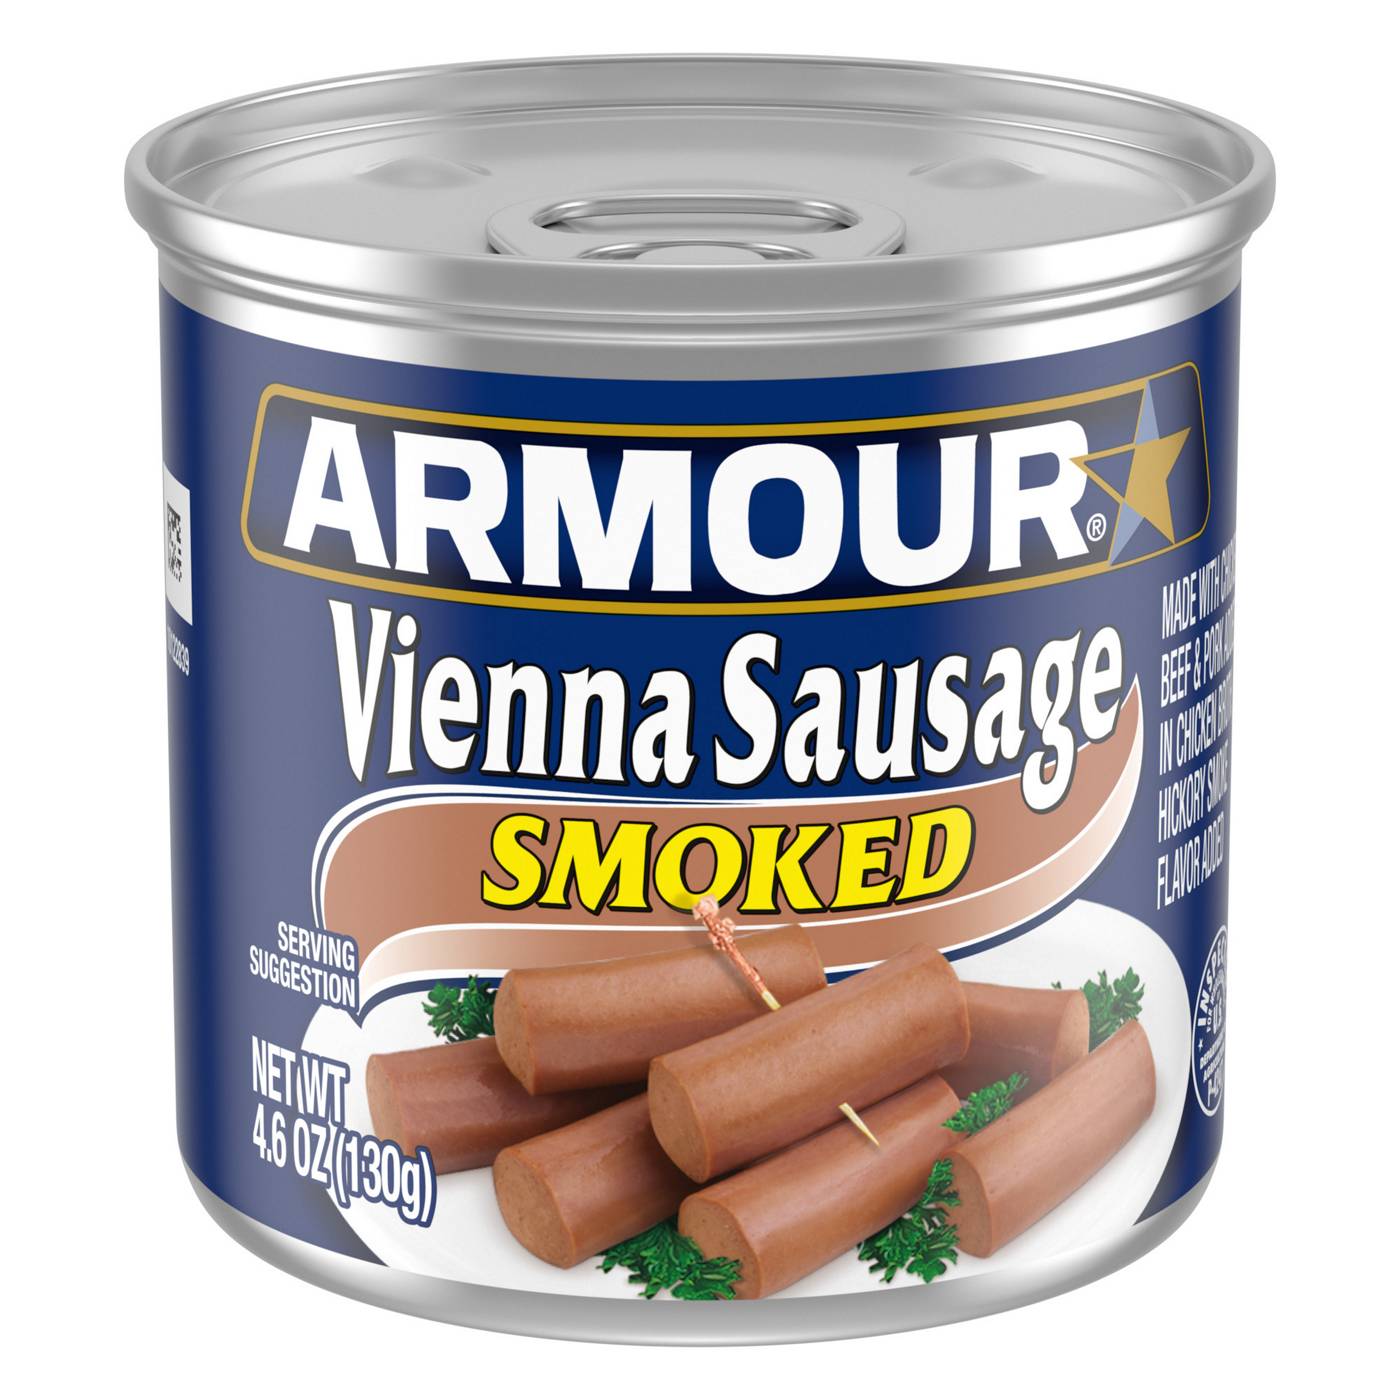 Armour Smoked Vienna Sausage Canned Sausage; image 1 of 7